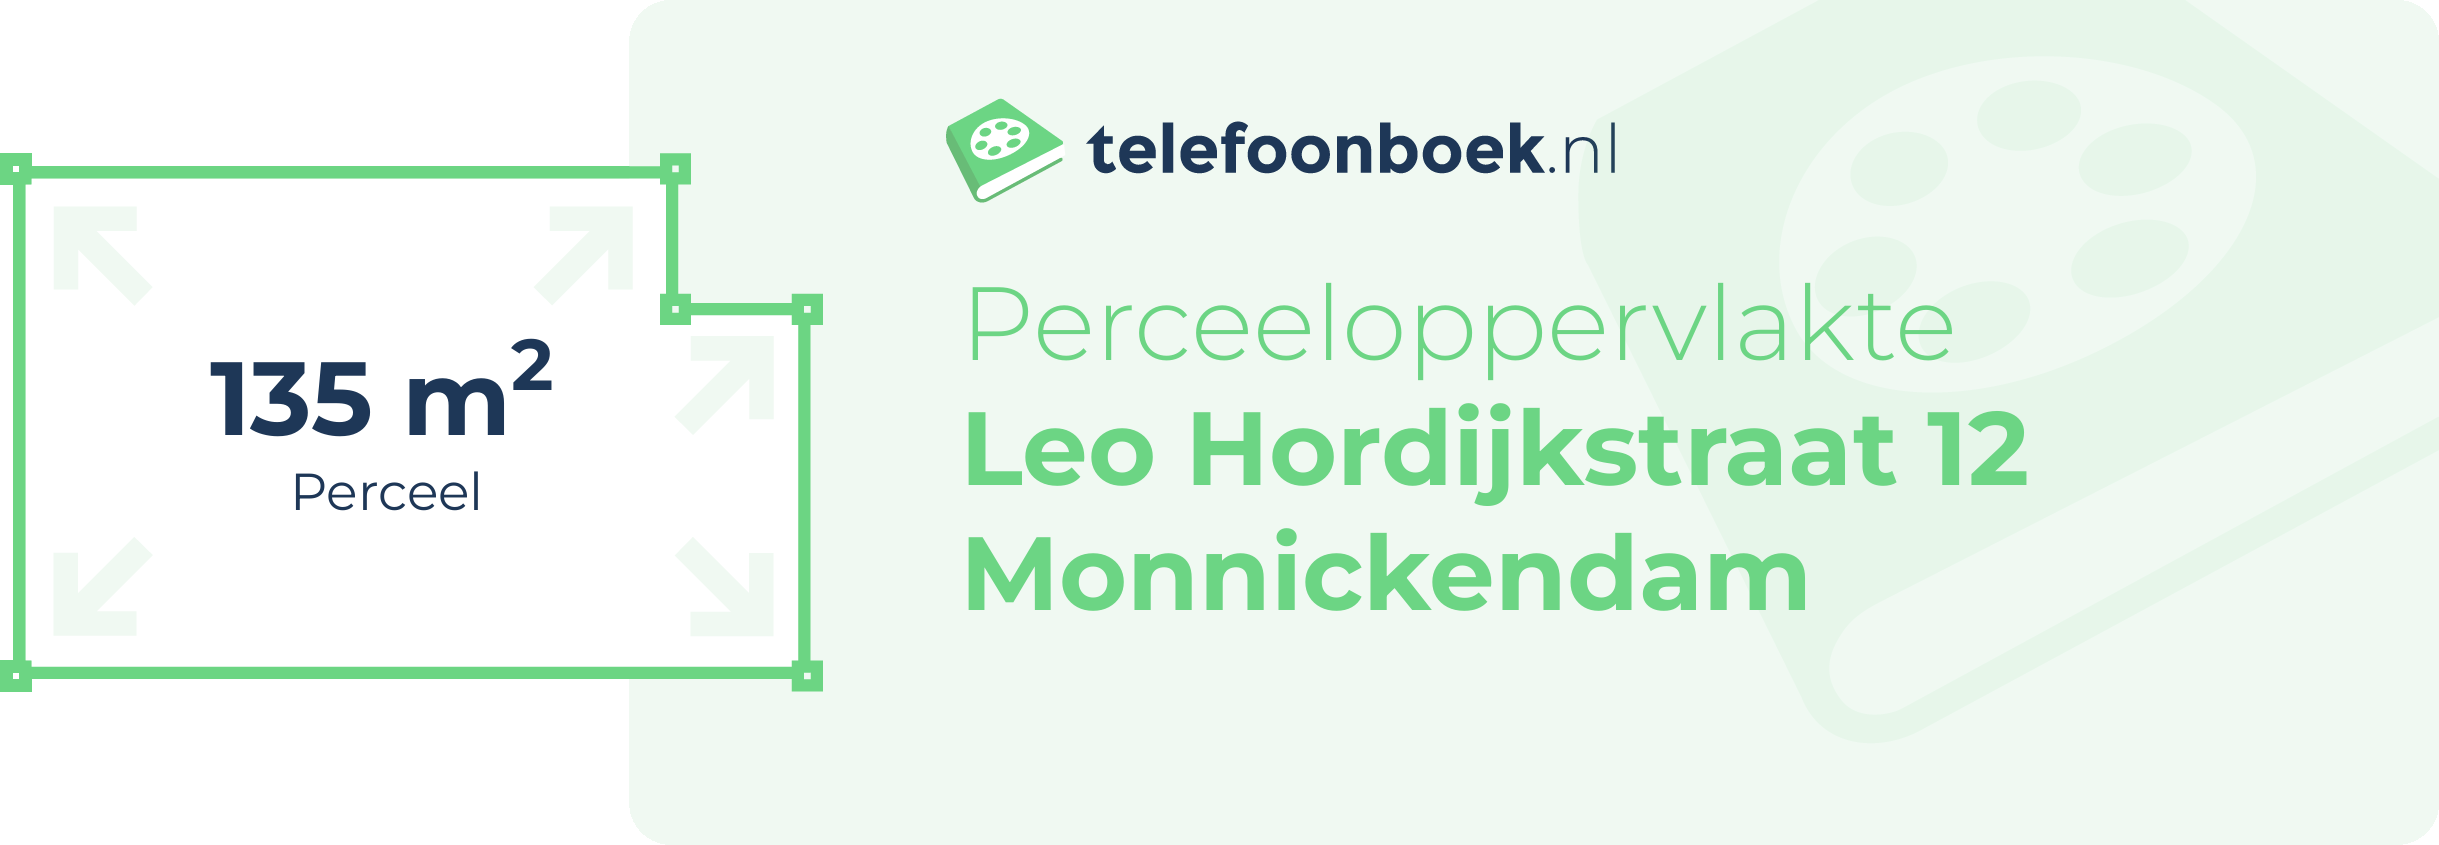 Perceeloppervlakte Leo Hordijkstraat 12 Monnickendam